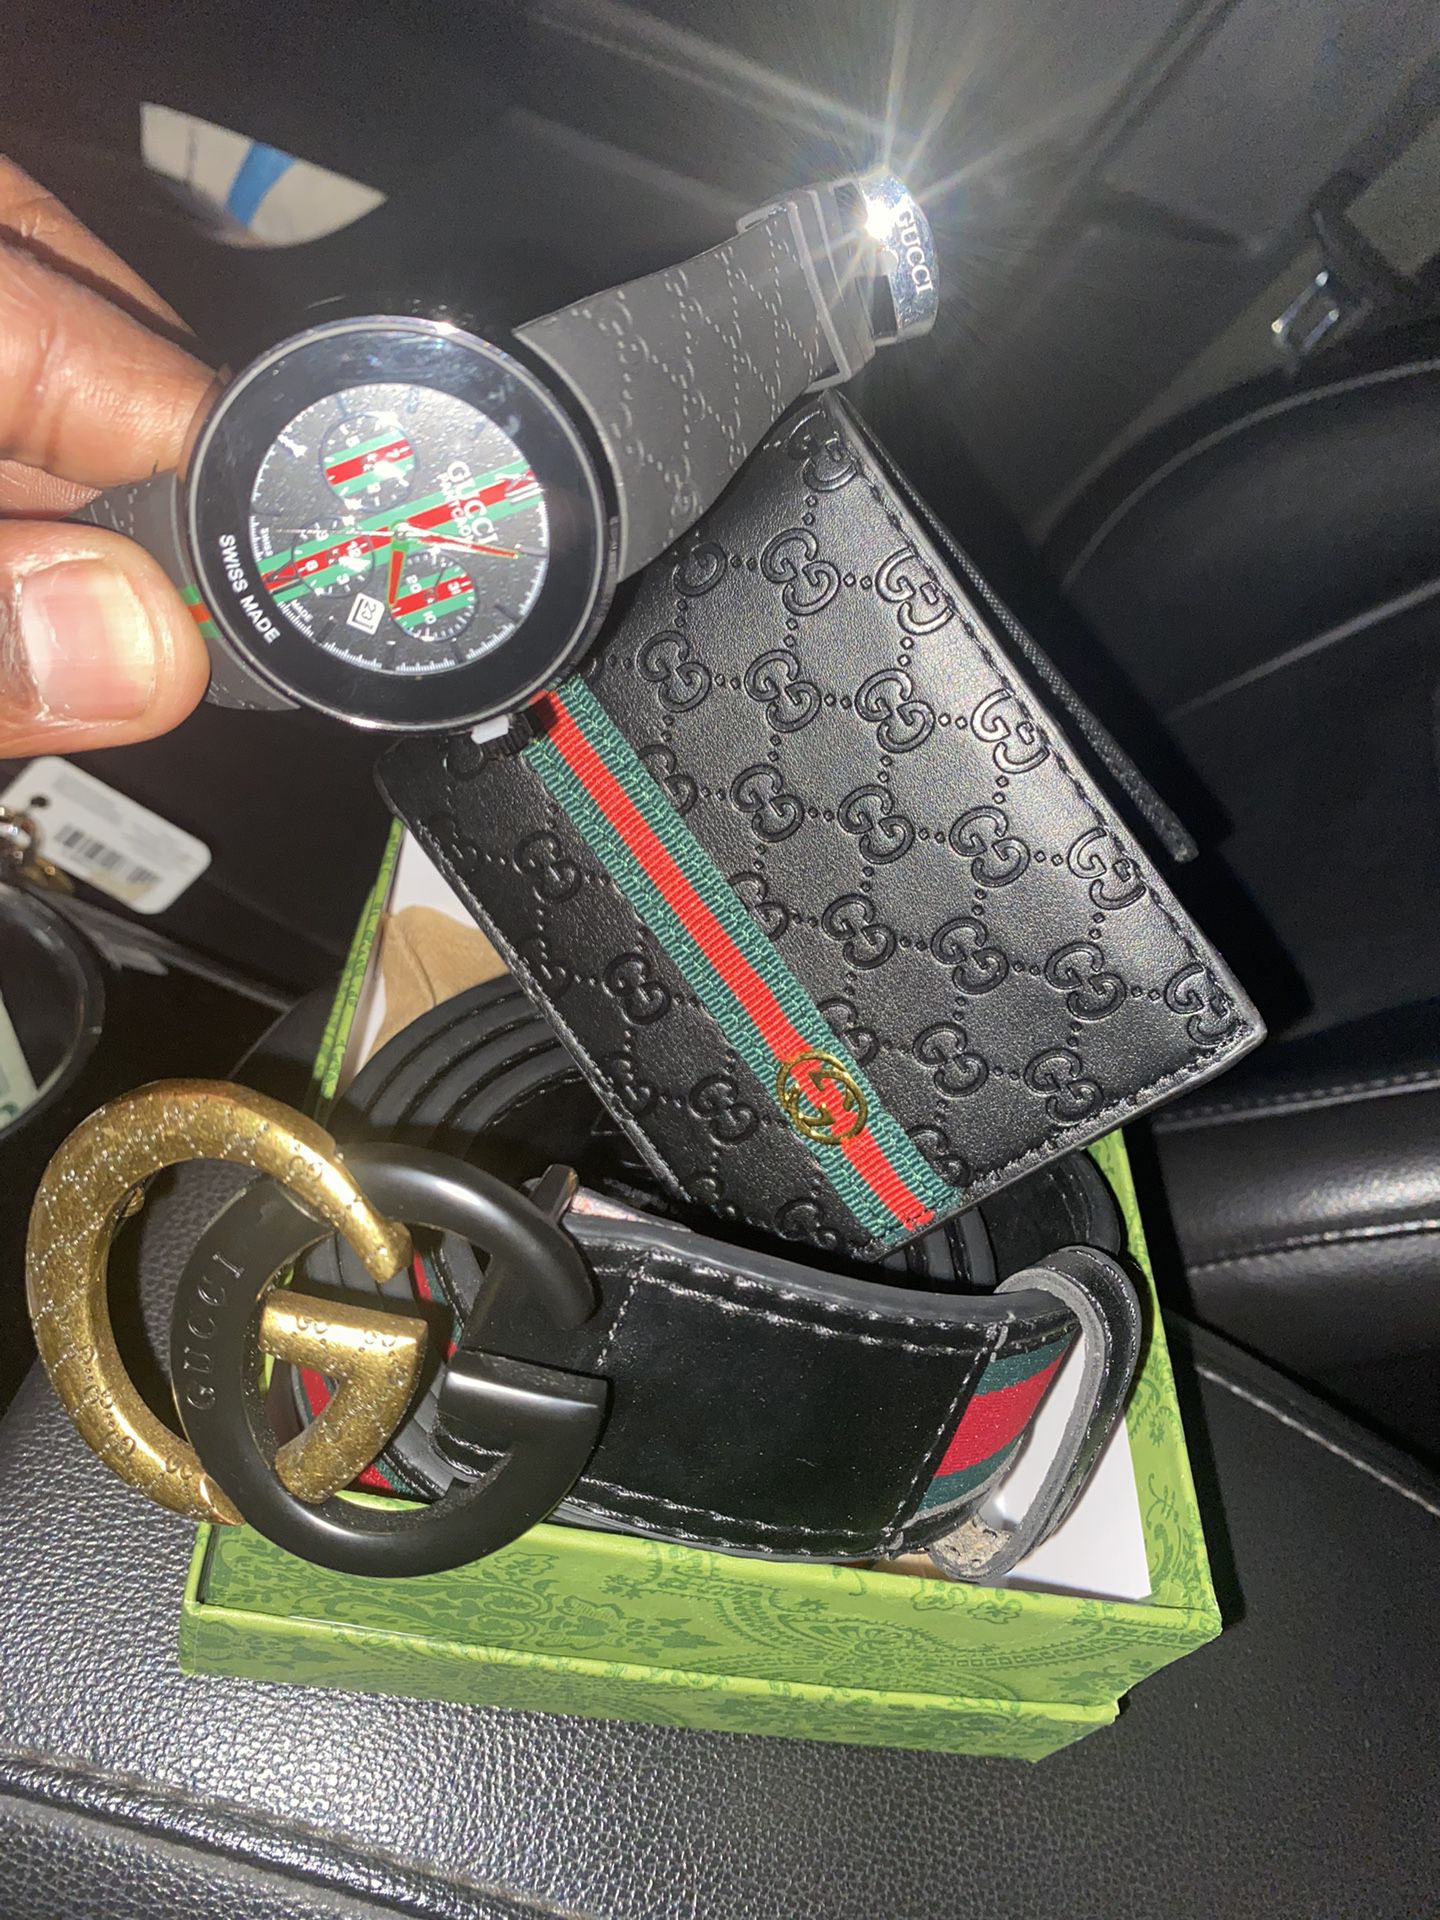 Belt Watch N Wallet